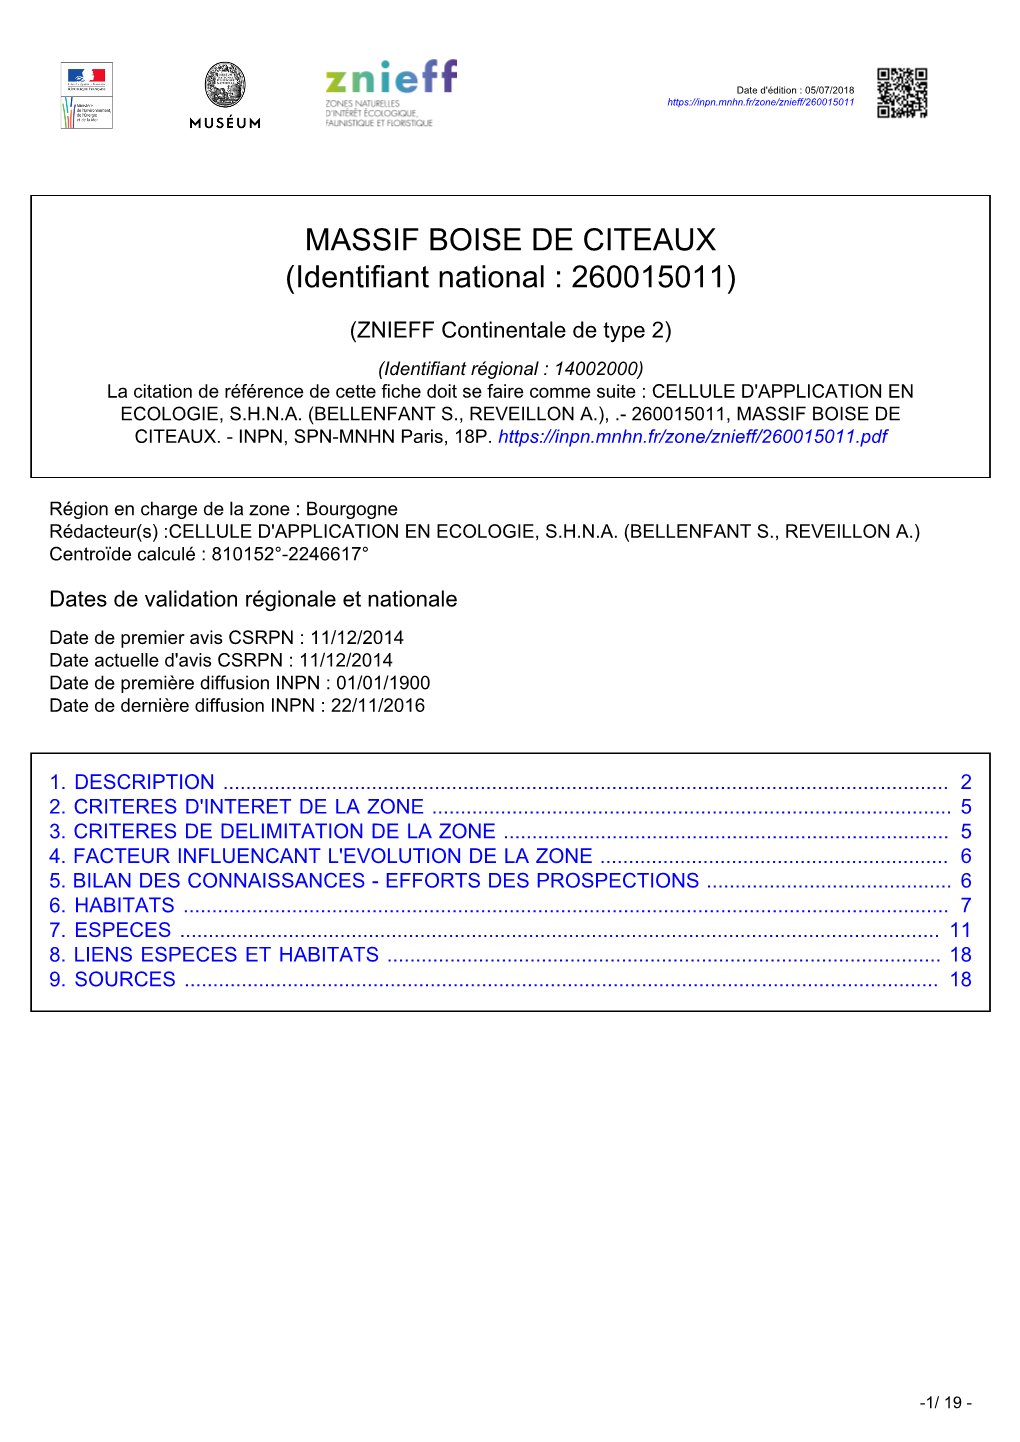 MASSIF BOISE DE CITEAUX (Identifiant National : 260015011)